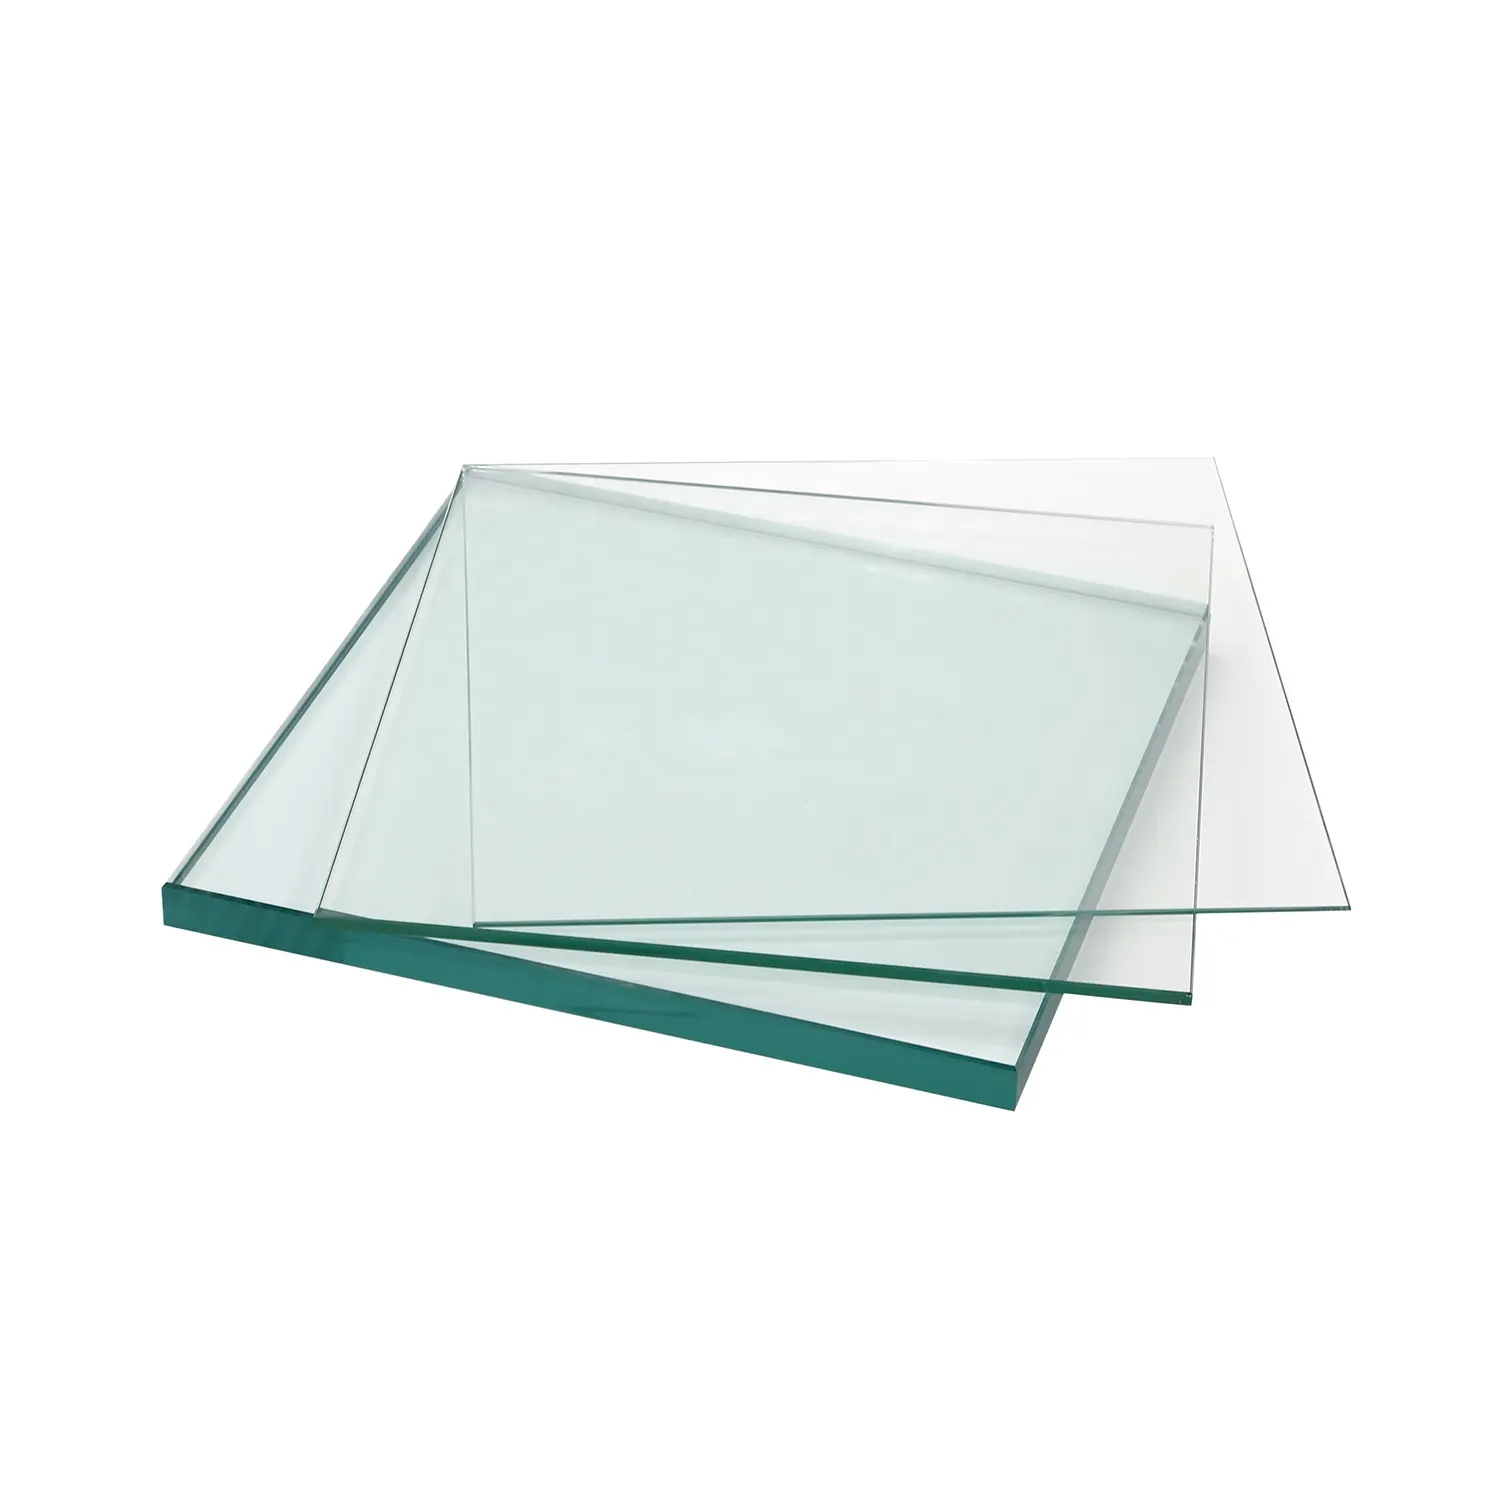 Vidrio flotador transparente de varios colores, nuevo precio bajo, listo para enviar